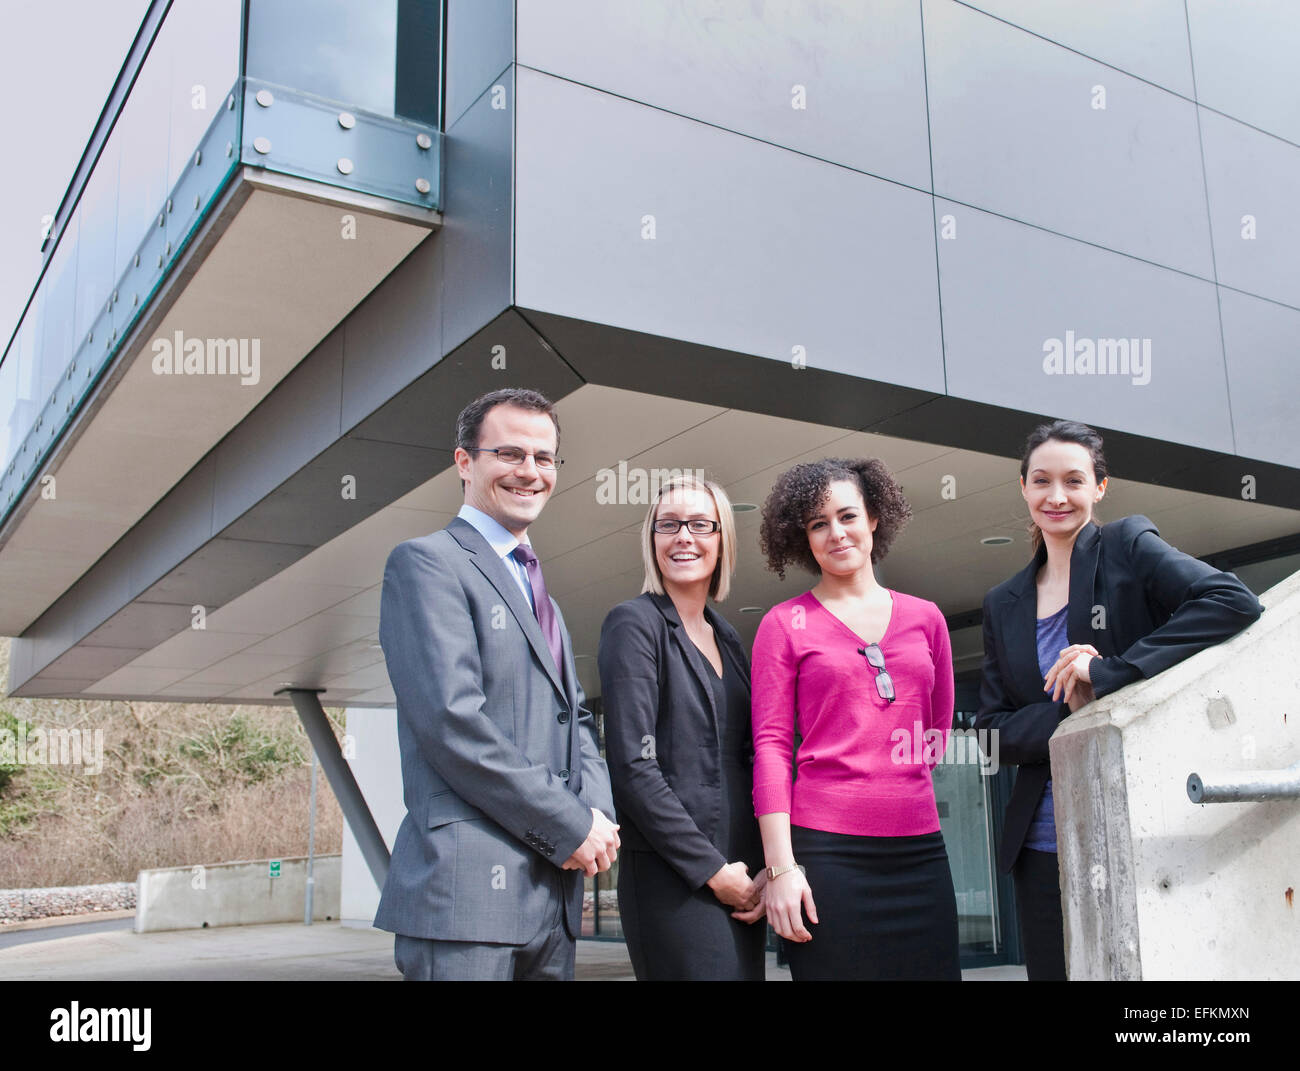 Porträt von Geschäftsmann und drei Unternehmerinnen vor Bürogebäude Stockfoto